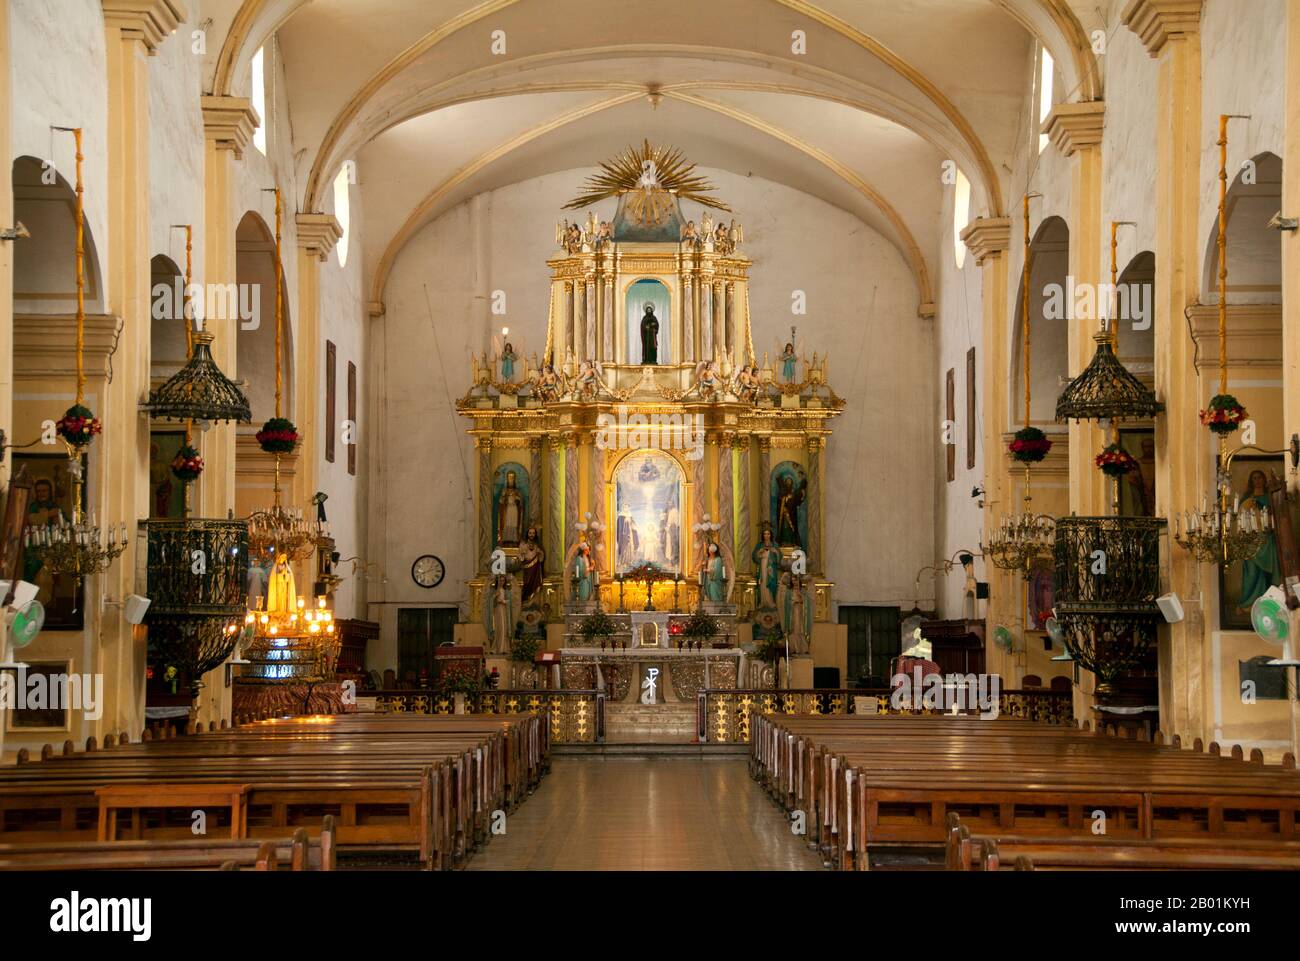 Philippinen: Hauptaltar, St. Paul Cathedral, Vigan, Provinz Ilocos Sur, Insel Luzon. Die heutige St.. Die Kathedrale von Paul wurde 1641 erbaut. Es gab eine bescheidenere Holz- und Reetkapelle, die 1574 an derselben Stelle gebaut wurde, aber zweimal erlitt sie die Verwüstungen von Erdbeben, zuerst 1619 und dann nur wenige Jahre später 1627. Die Stadt Vigan ist die Hauptstadt der Provinz Ilocos Sur und liegt an der Westküste der Insel Luzon. Vigan ist die einzige erhaltene historische Stadt auf den Philippinen, die aus der spanischen Kolonialzeit des 15. Jahrhunderts stammt. Stockfoto